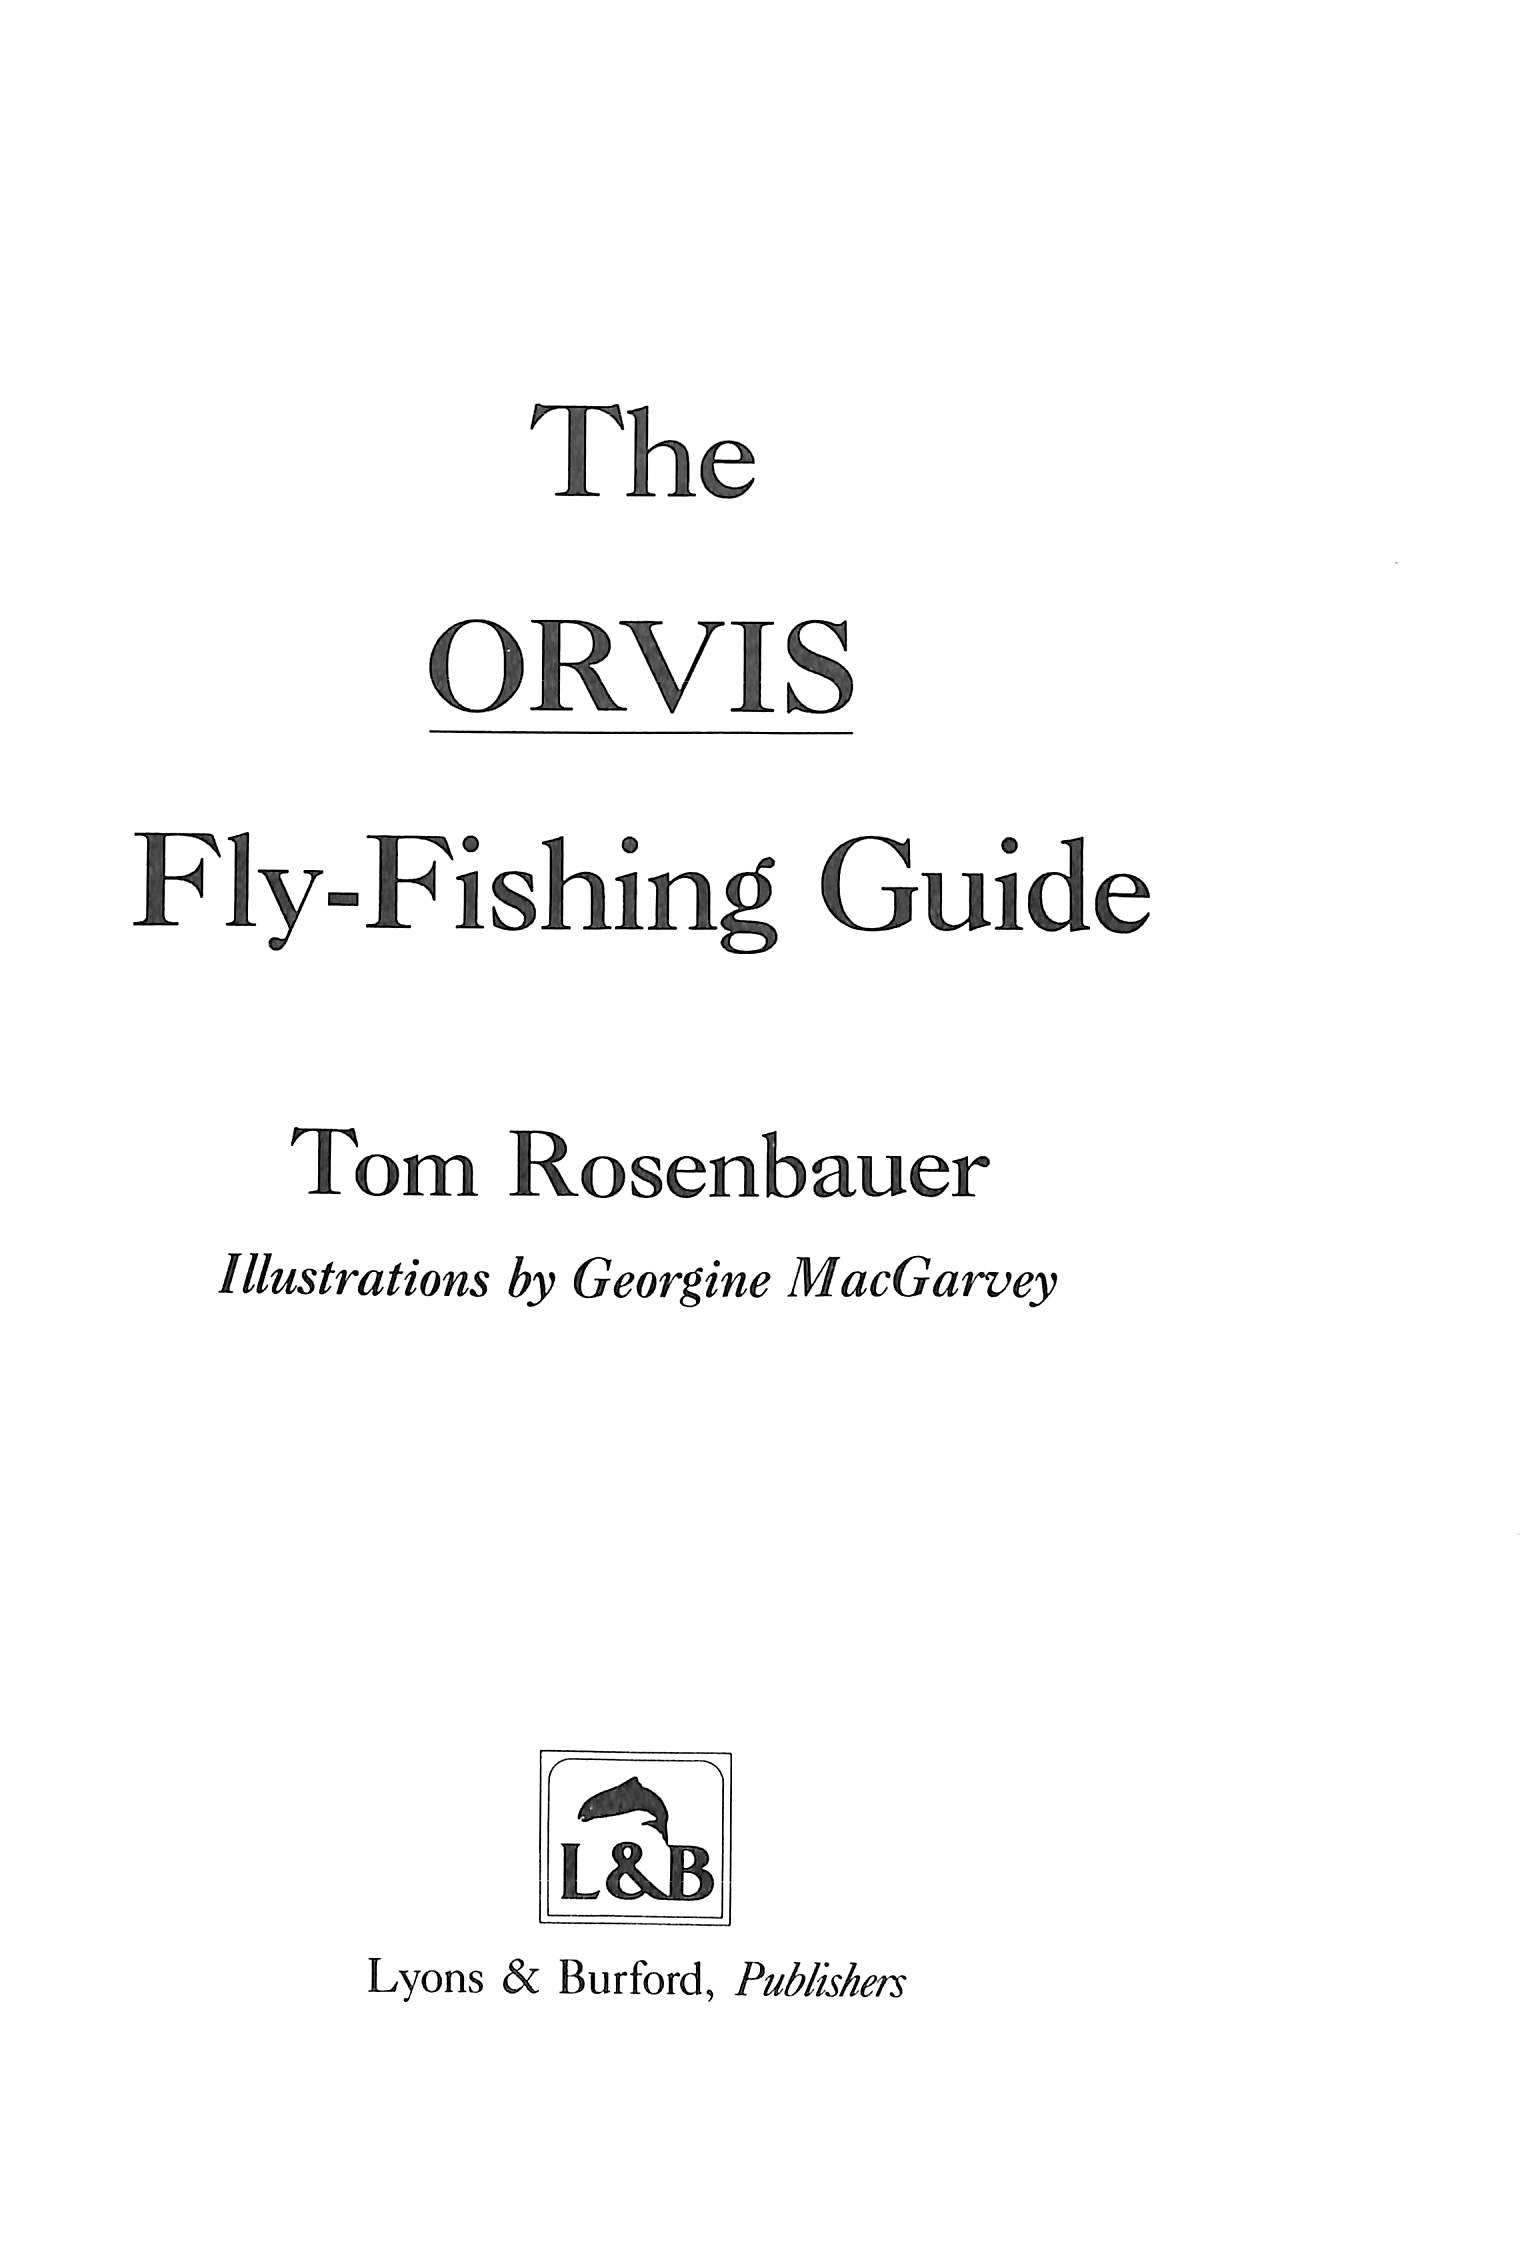 The Orvis Fly-Fishing Guide 1984 ROSENBAUER, Tom